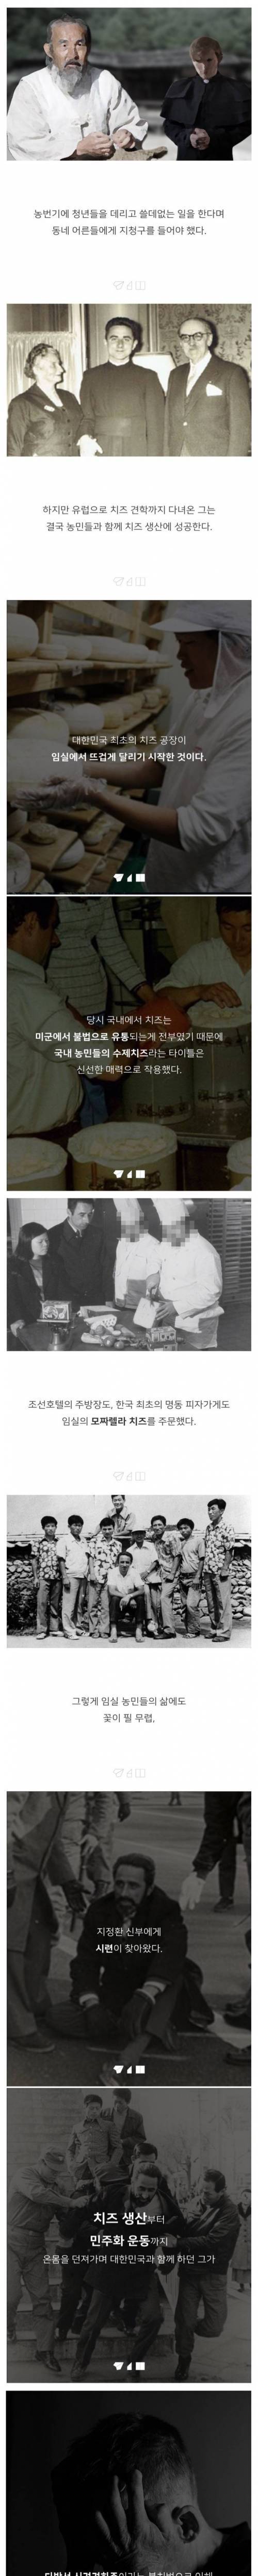 [스압] 대한민국 치즈의 숨겨진 비밀.jpg